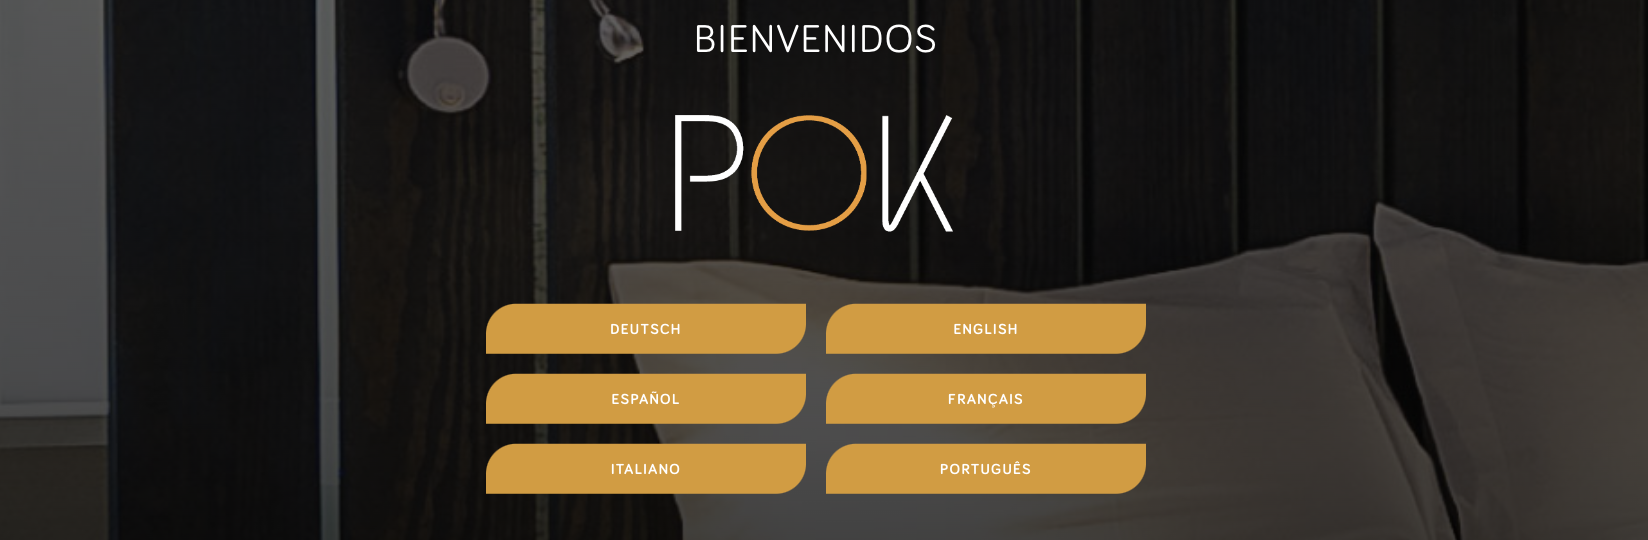 Recensioni POK Point of Kiosk: POK - Check-in in 30 secondi - Appvizer